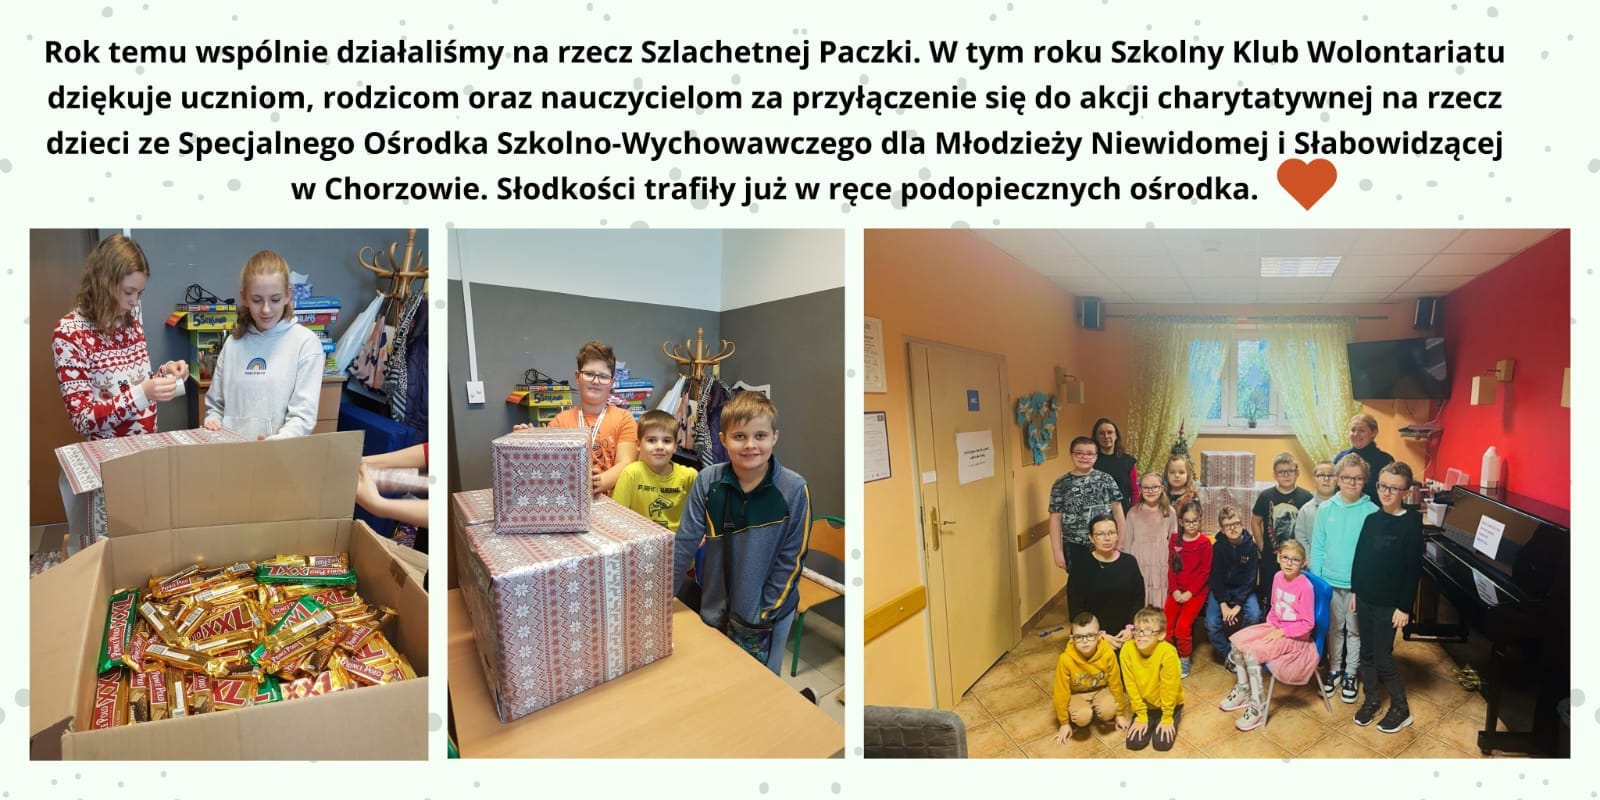 Akcja charytatywna dla SOSW dla Młodzieży Niewidomej i Słabowidzącej w Chorzowie...